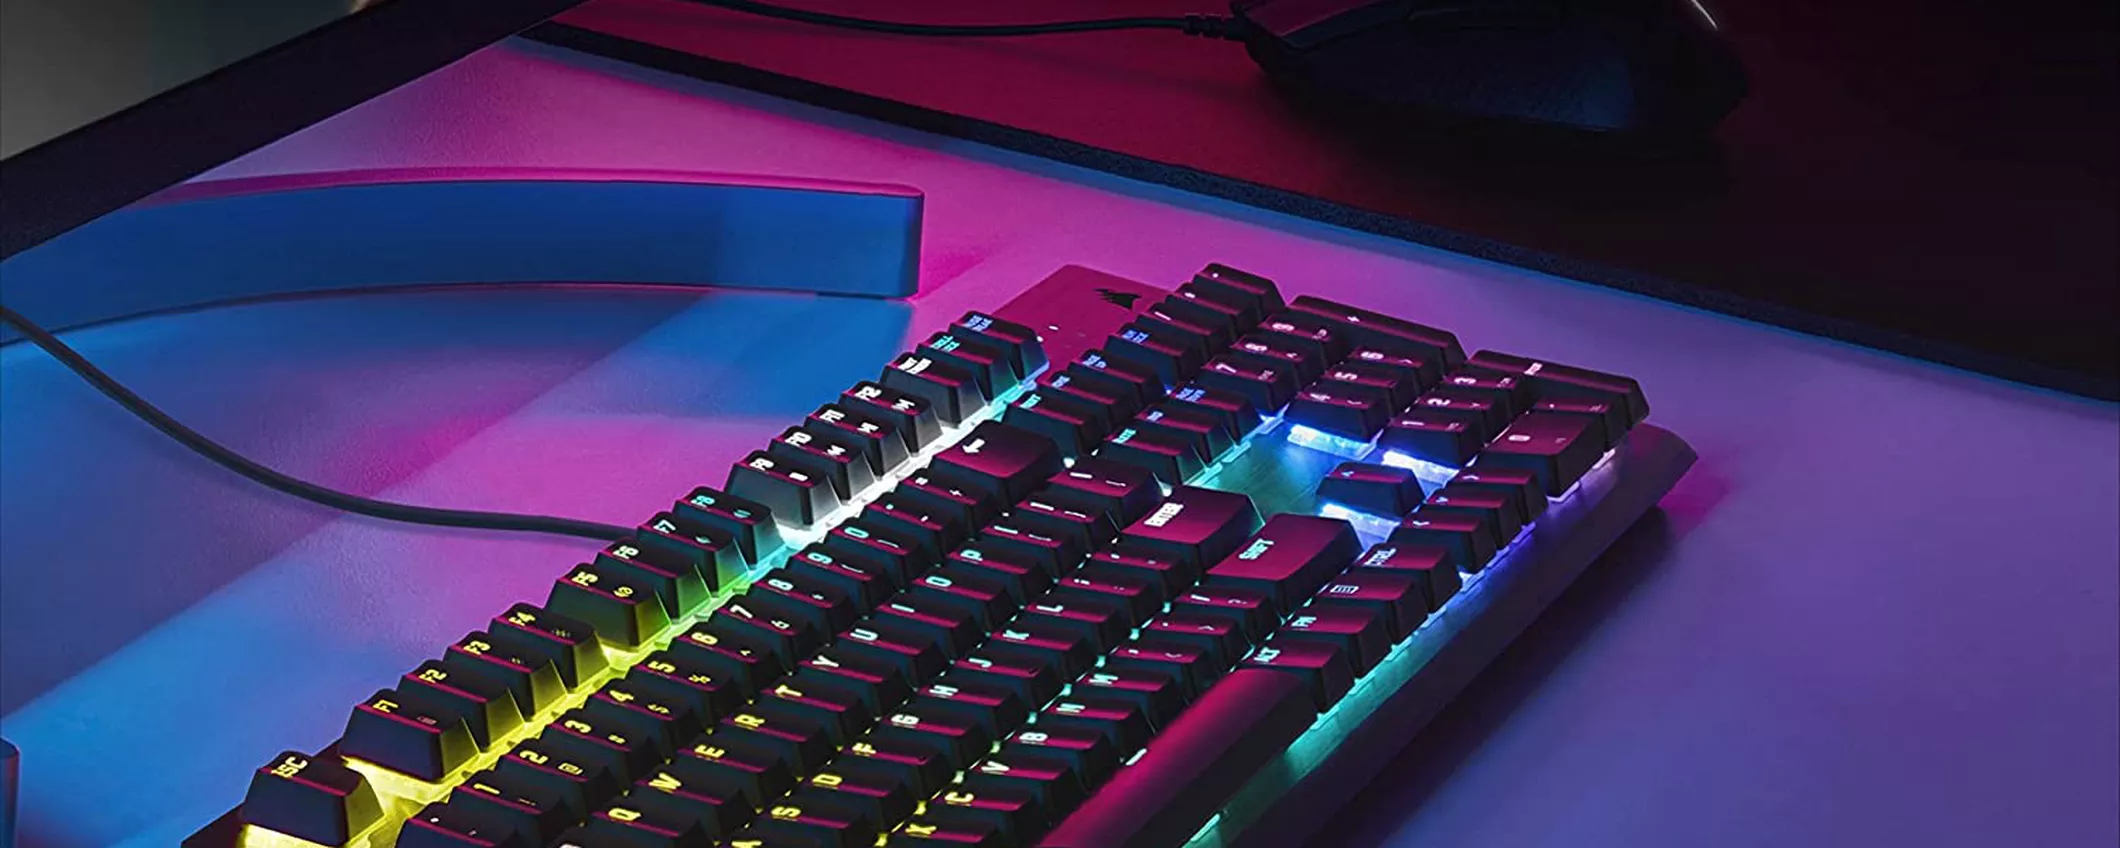 Corsair K60, la tastiera meccanica da gaming con tasti professionali è un affare su Amazon